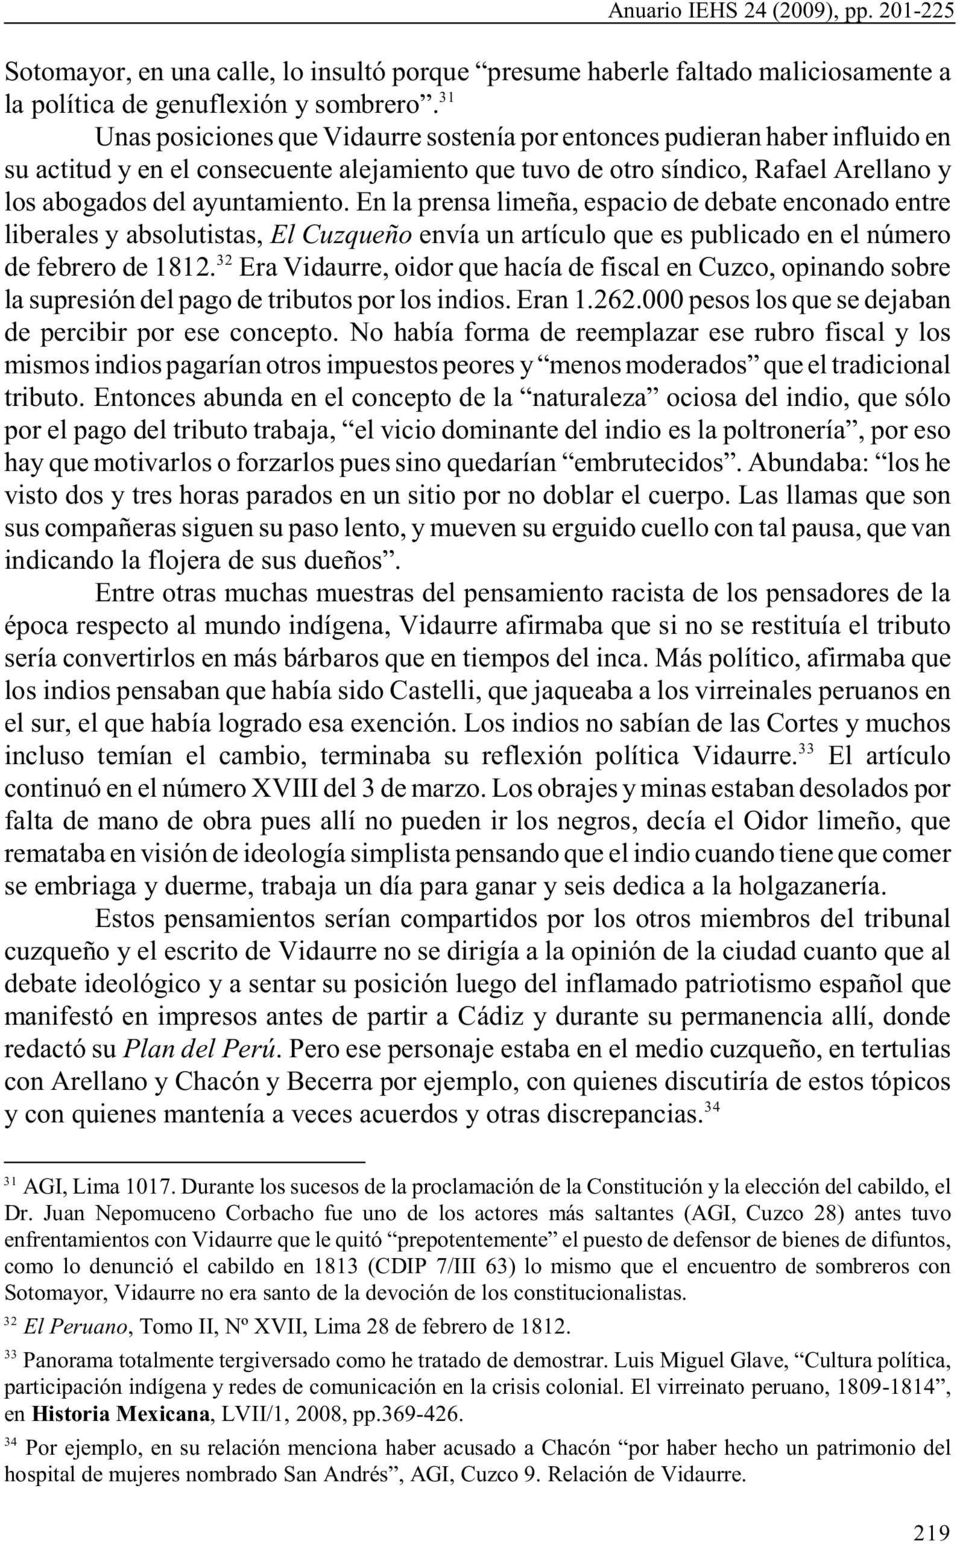 En la prensa limeña, espacio de debate enconado entre liberales y absolutistas, El Cuzqueño envía un artículo que es publicado en el número 32 de febrero de 1812.